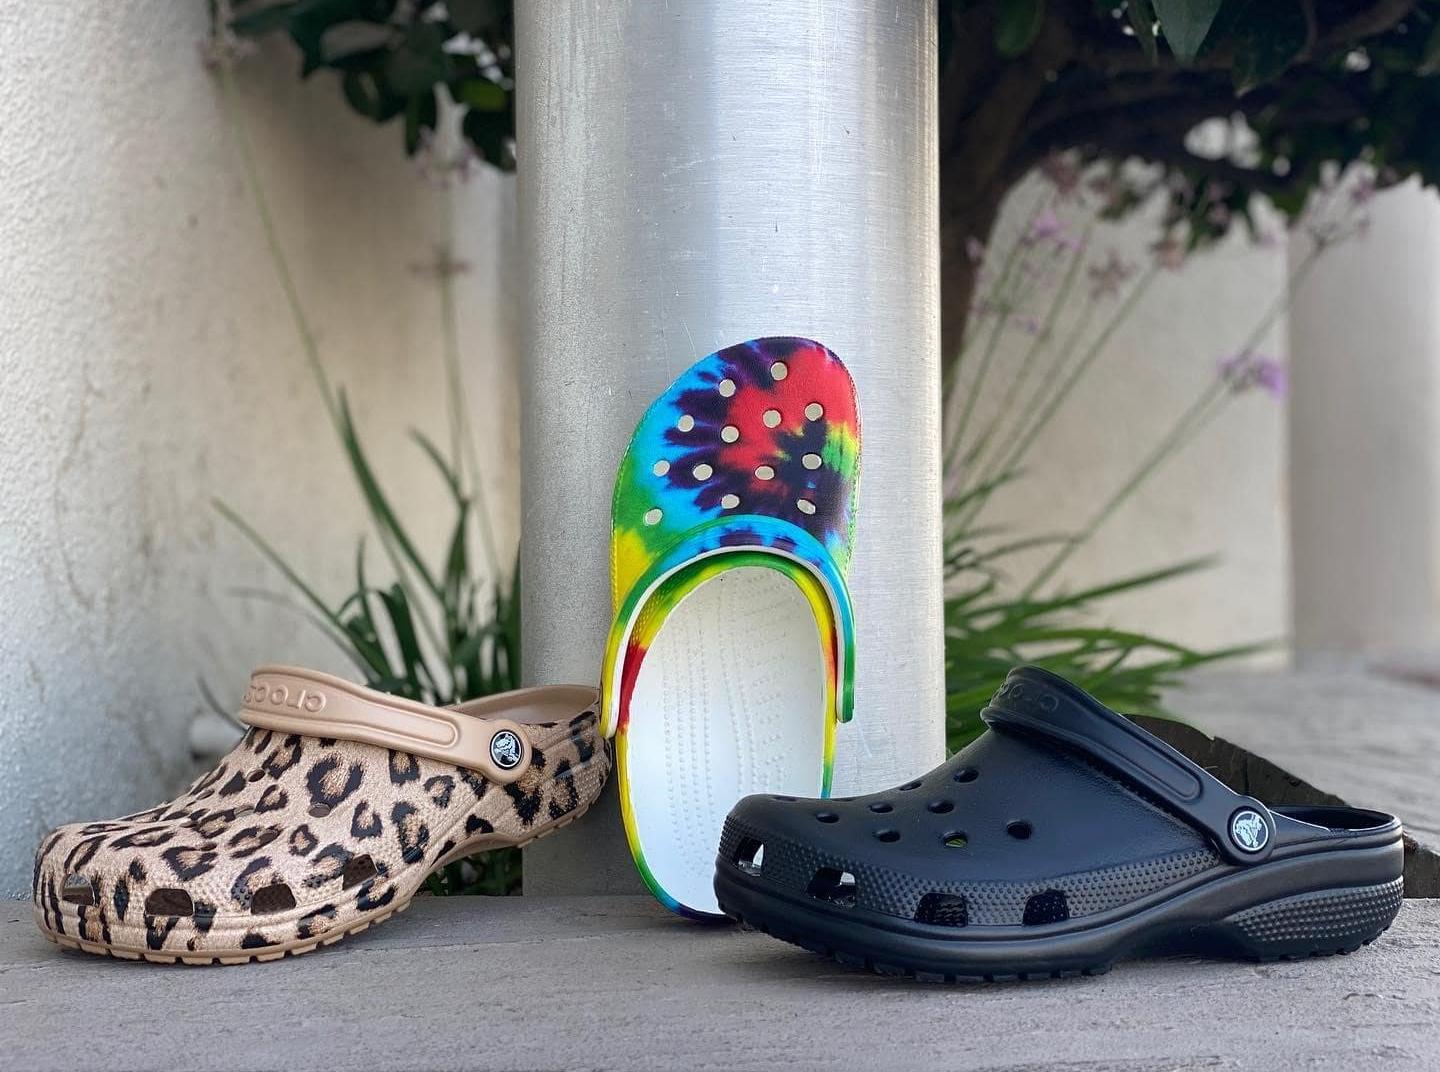 Shoe Shopping – What Size Crocs Should I Buy?